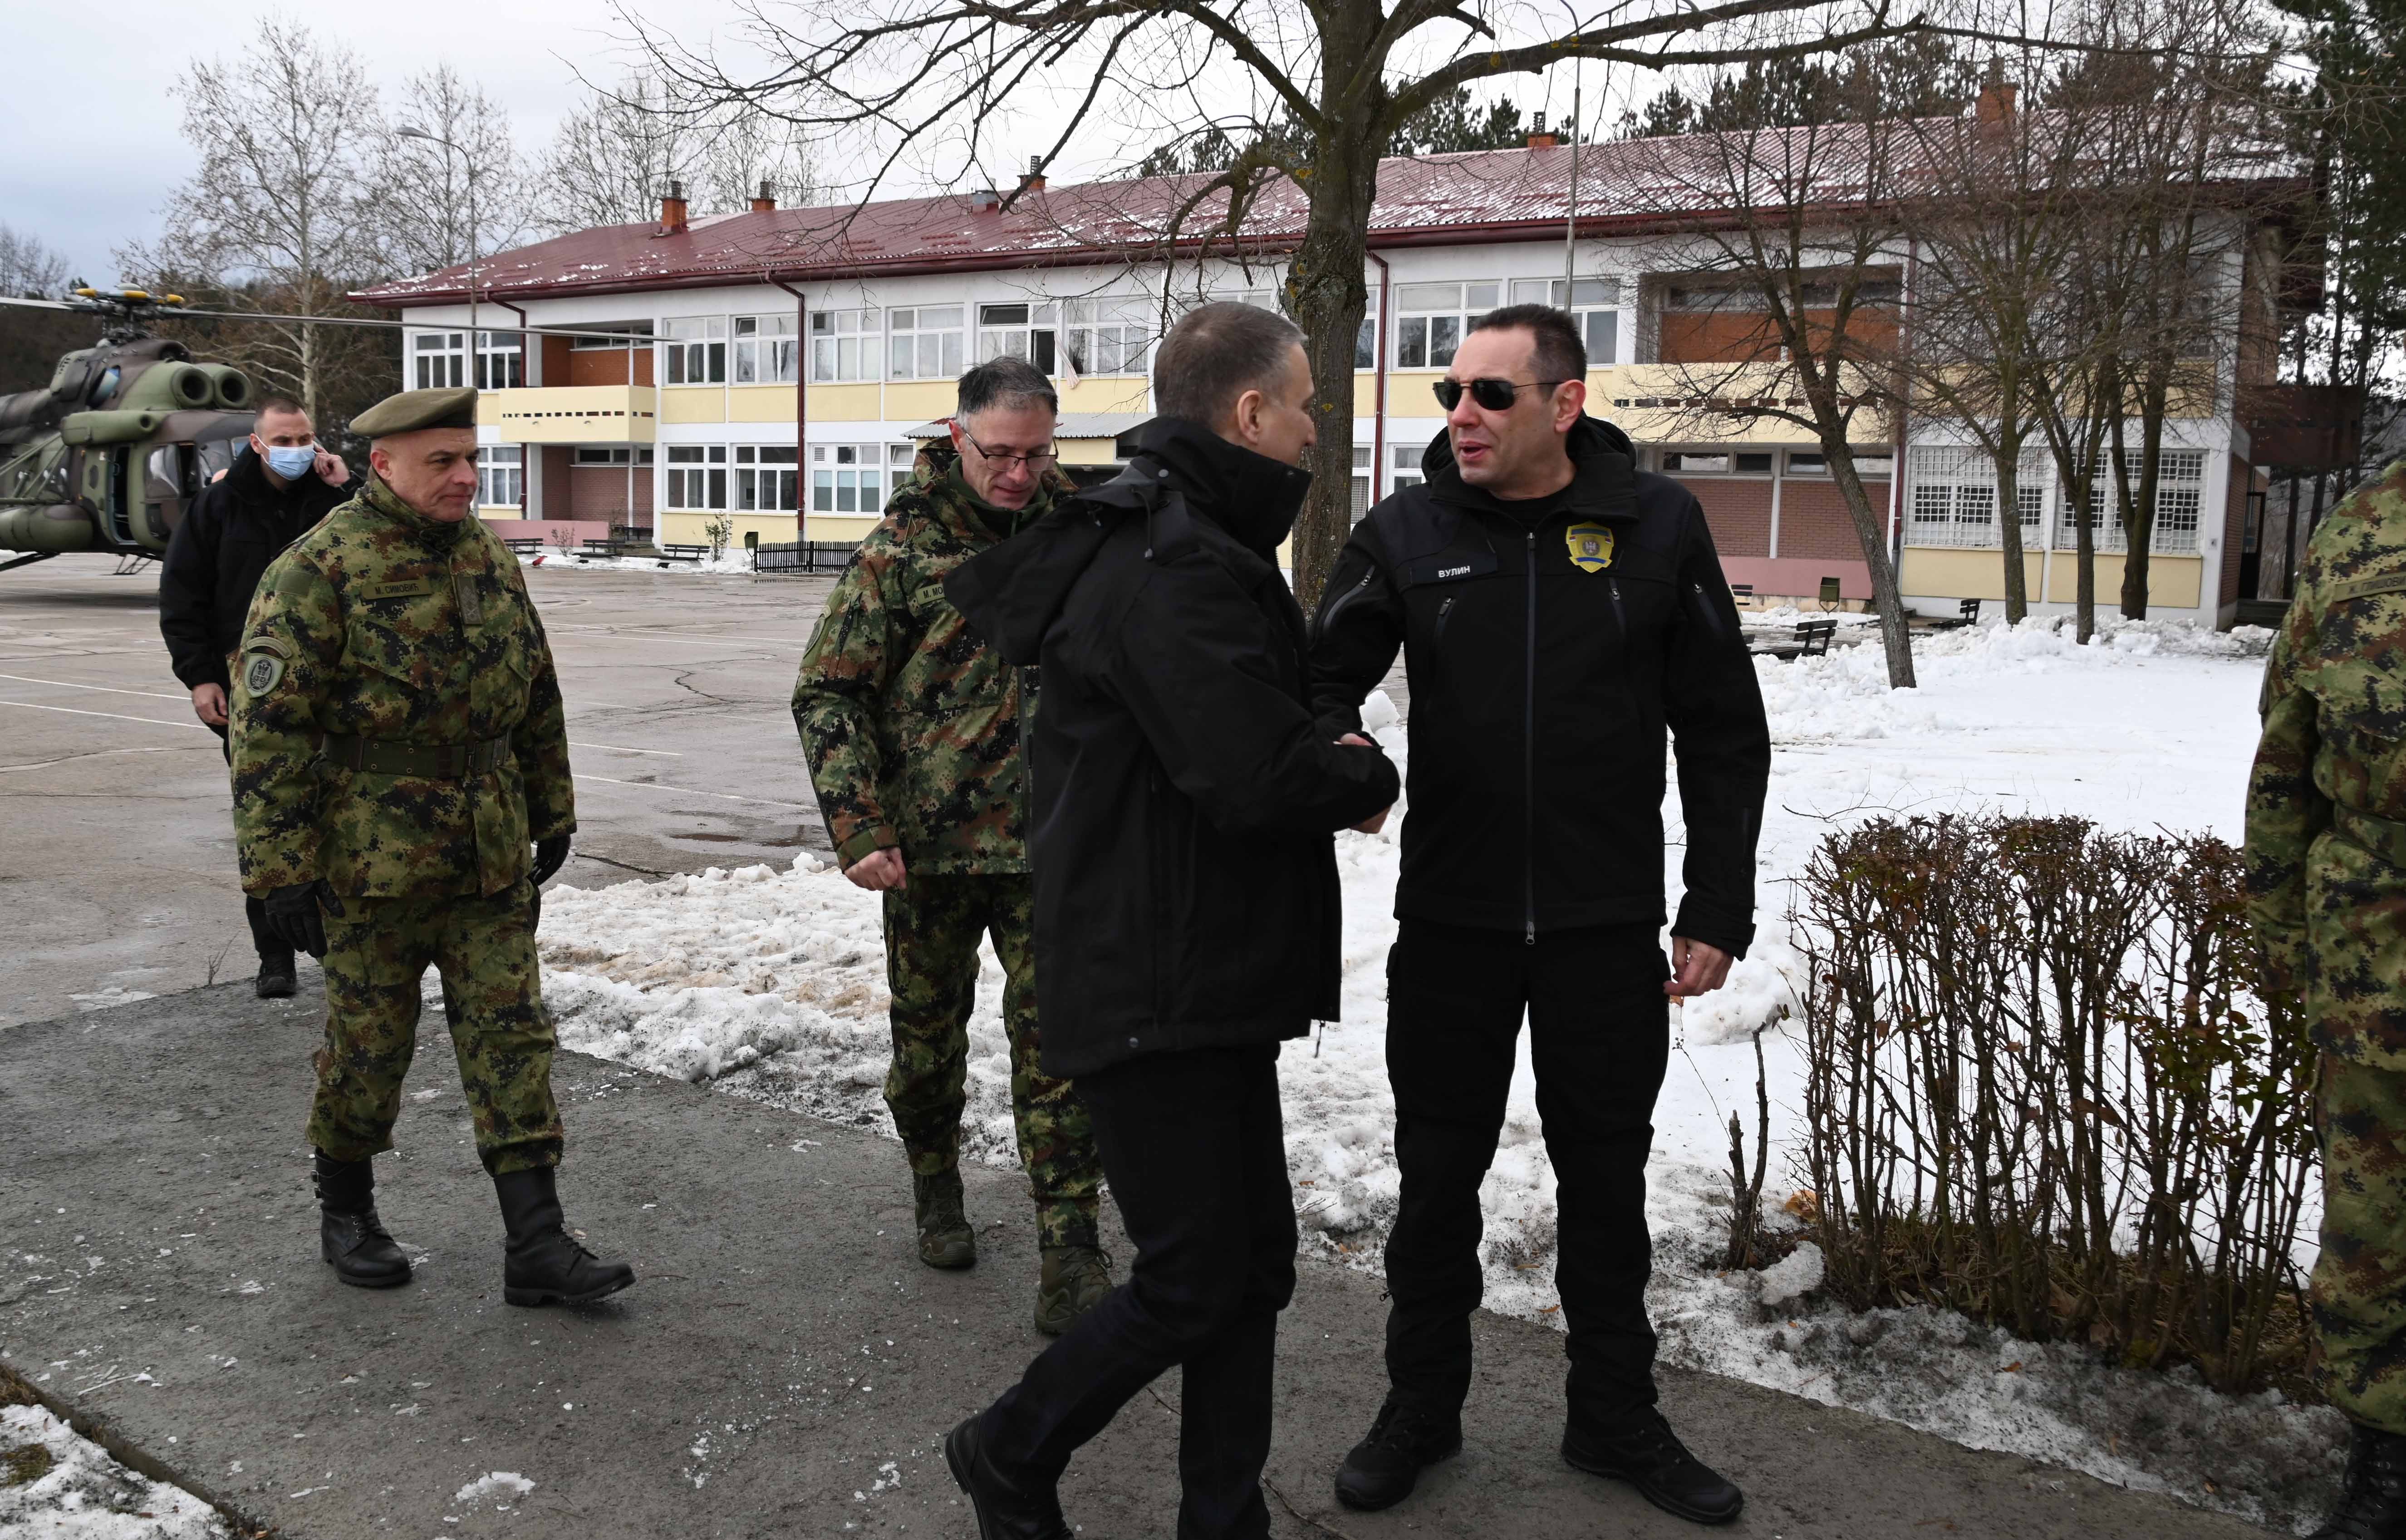 Po naređenju vrhovnog komandanta policijski i vojni vrh razmatrali bezbednosnu situaciju u KZB-u